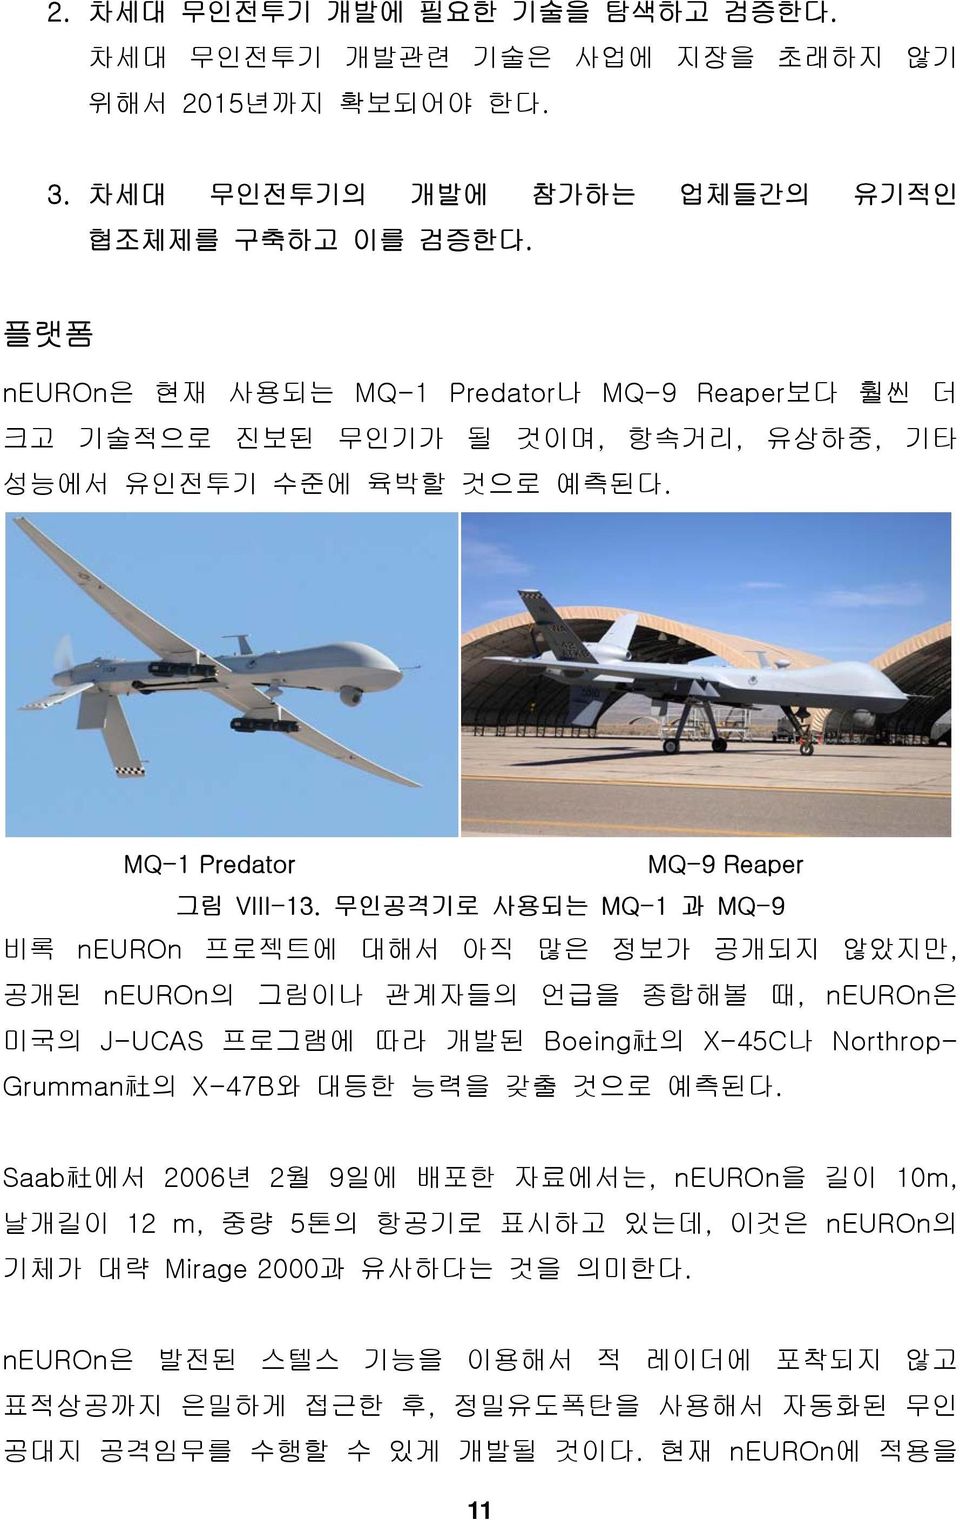 무인공격기로 사용되는 MQ-1 과 MQ-9 비록 neuron 프로젝트에 대해서 아직 많은 정보가 공개되지 않았지만, 공개된 neuron의 그림이나 관계자들의 언급을 종합해볼 때, neuron은 미국의 J-UCAS 프로그램에 따라 개발된 Boeing 社 의 X-45C나 Northrop- Grumman 社 의 X-47B와 대등한 능력을 갖출